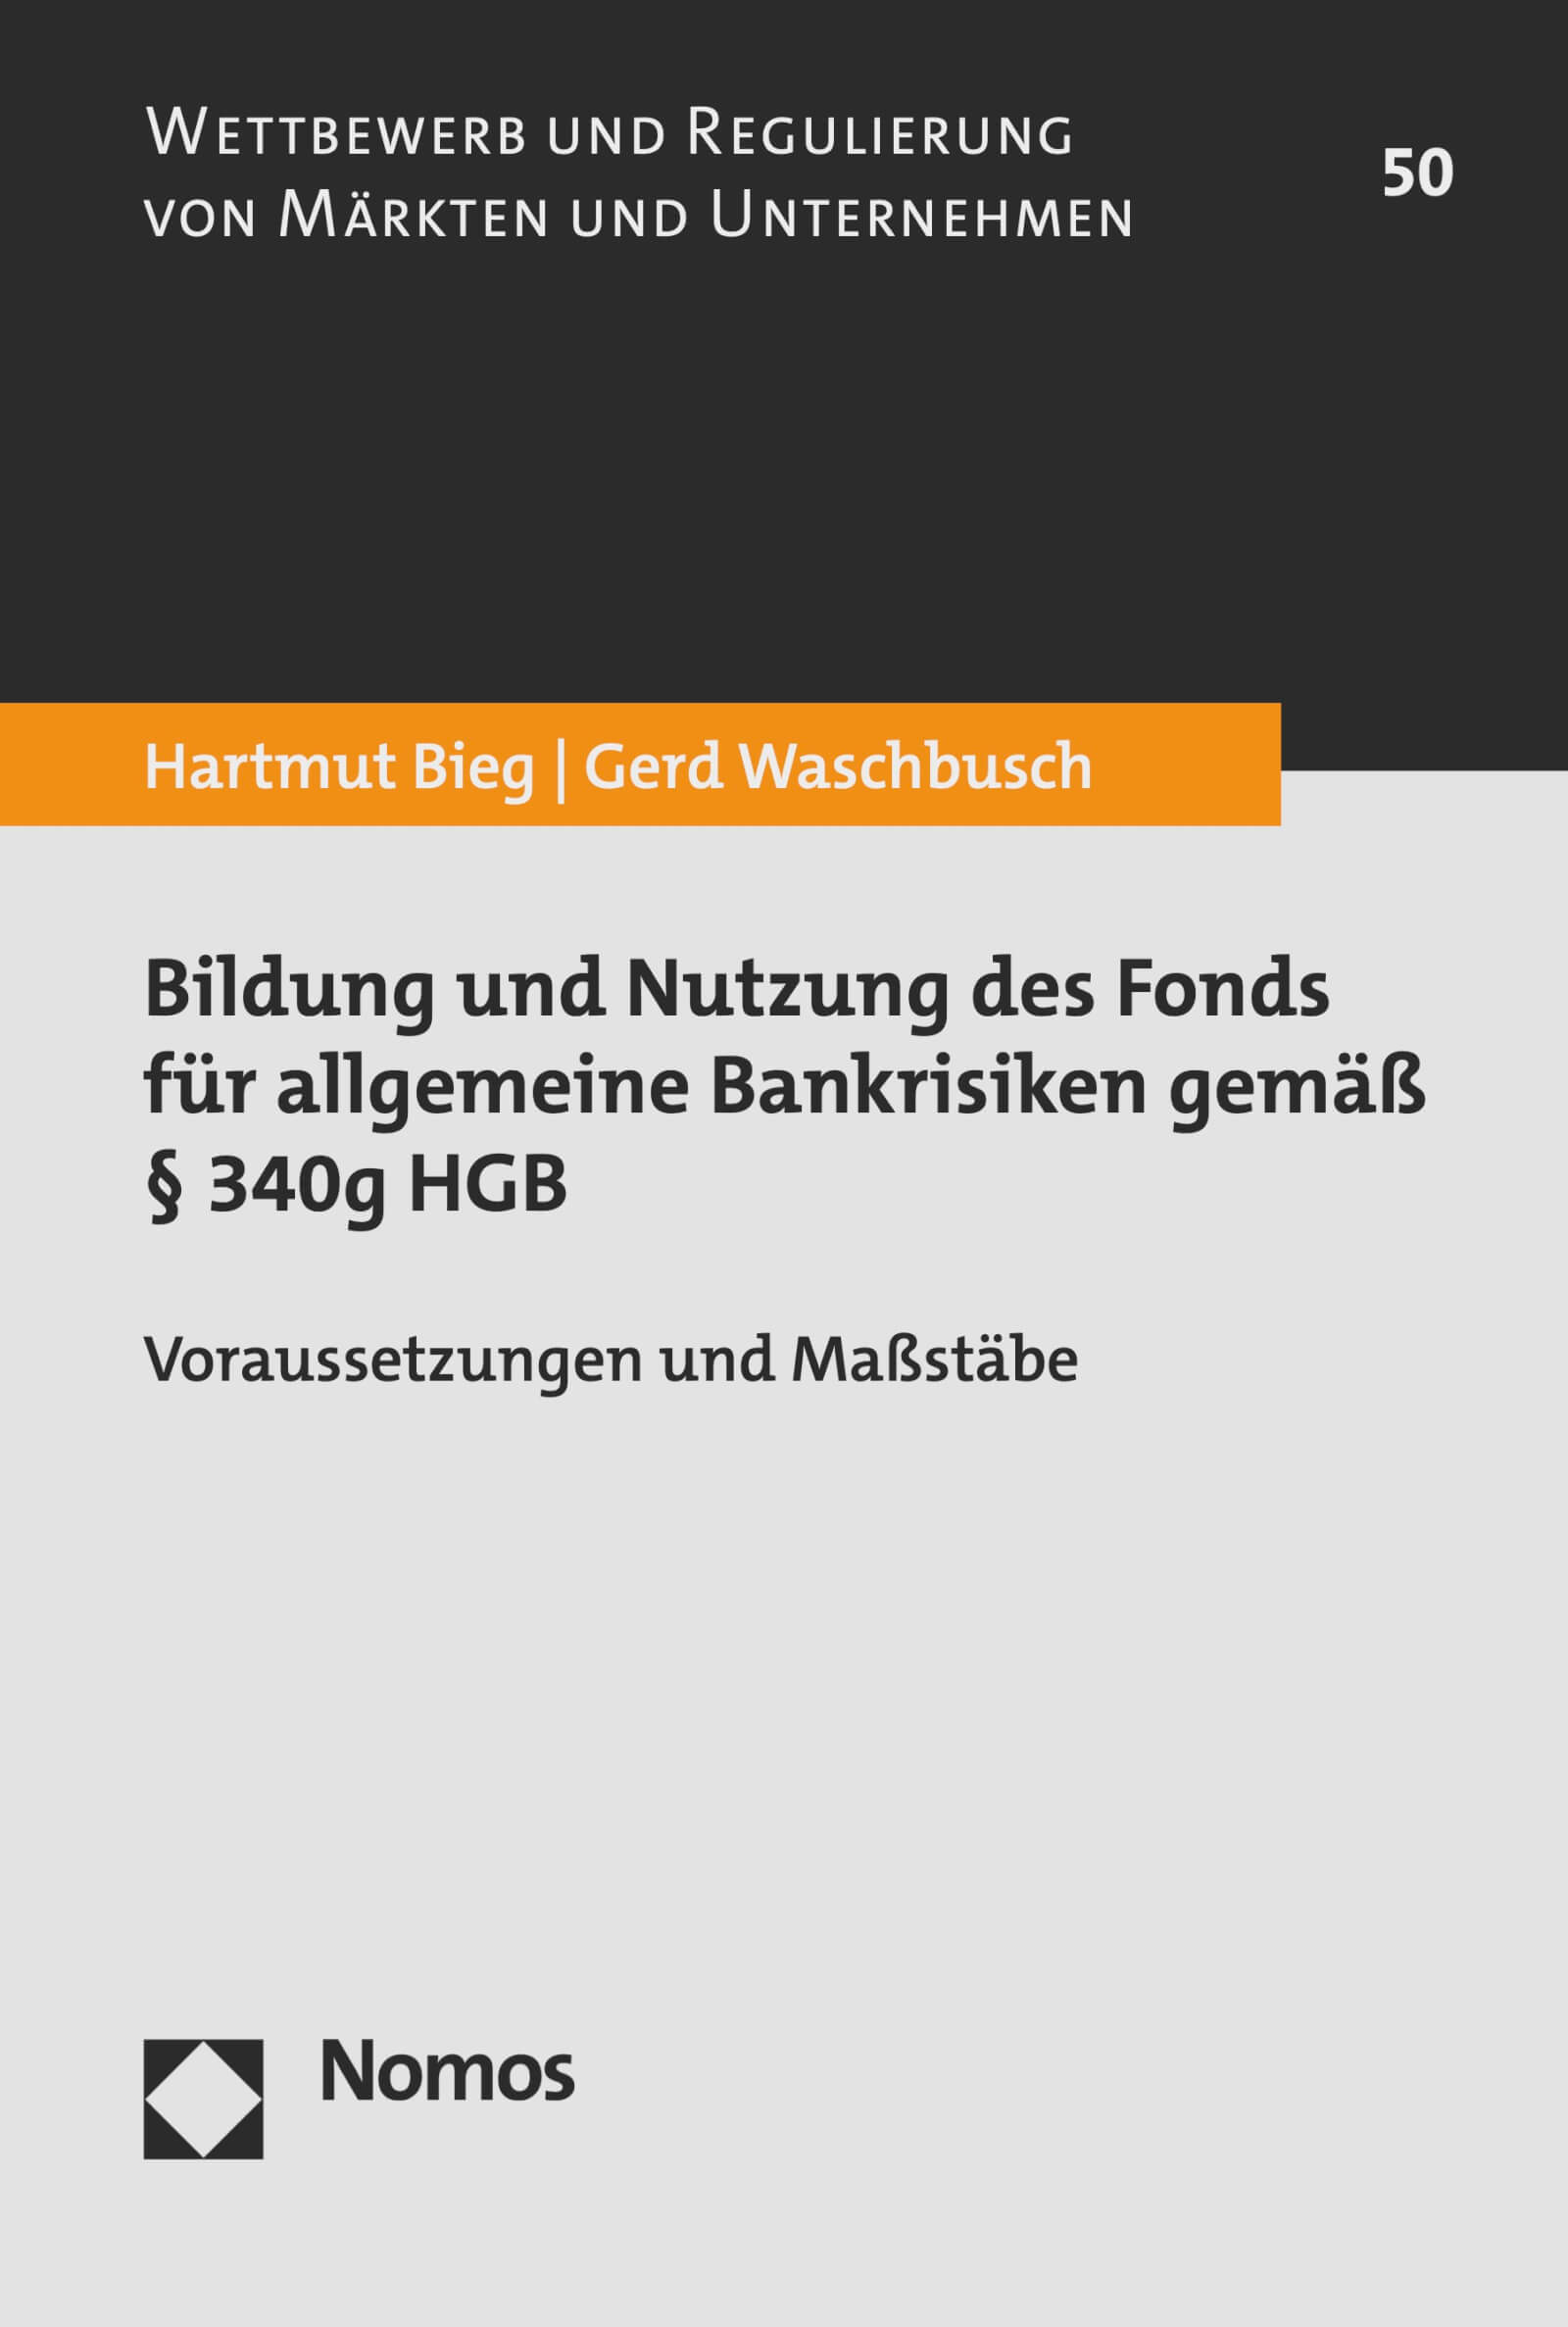 Bildung und Nutzung des Fonds für allgemeine Bankrisiken gemäß § 340g HGB